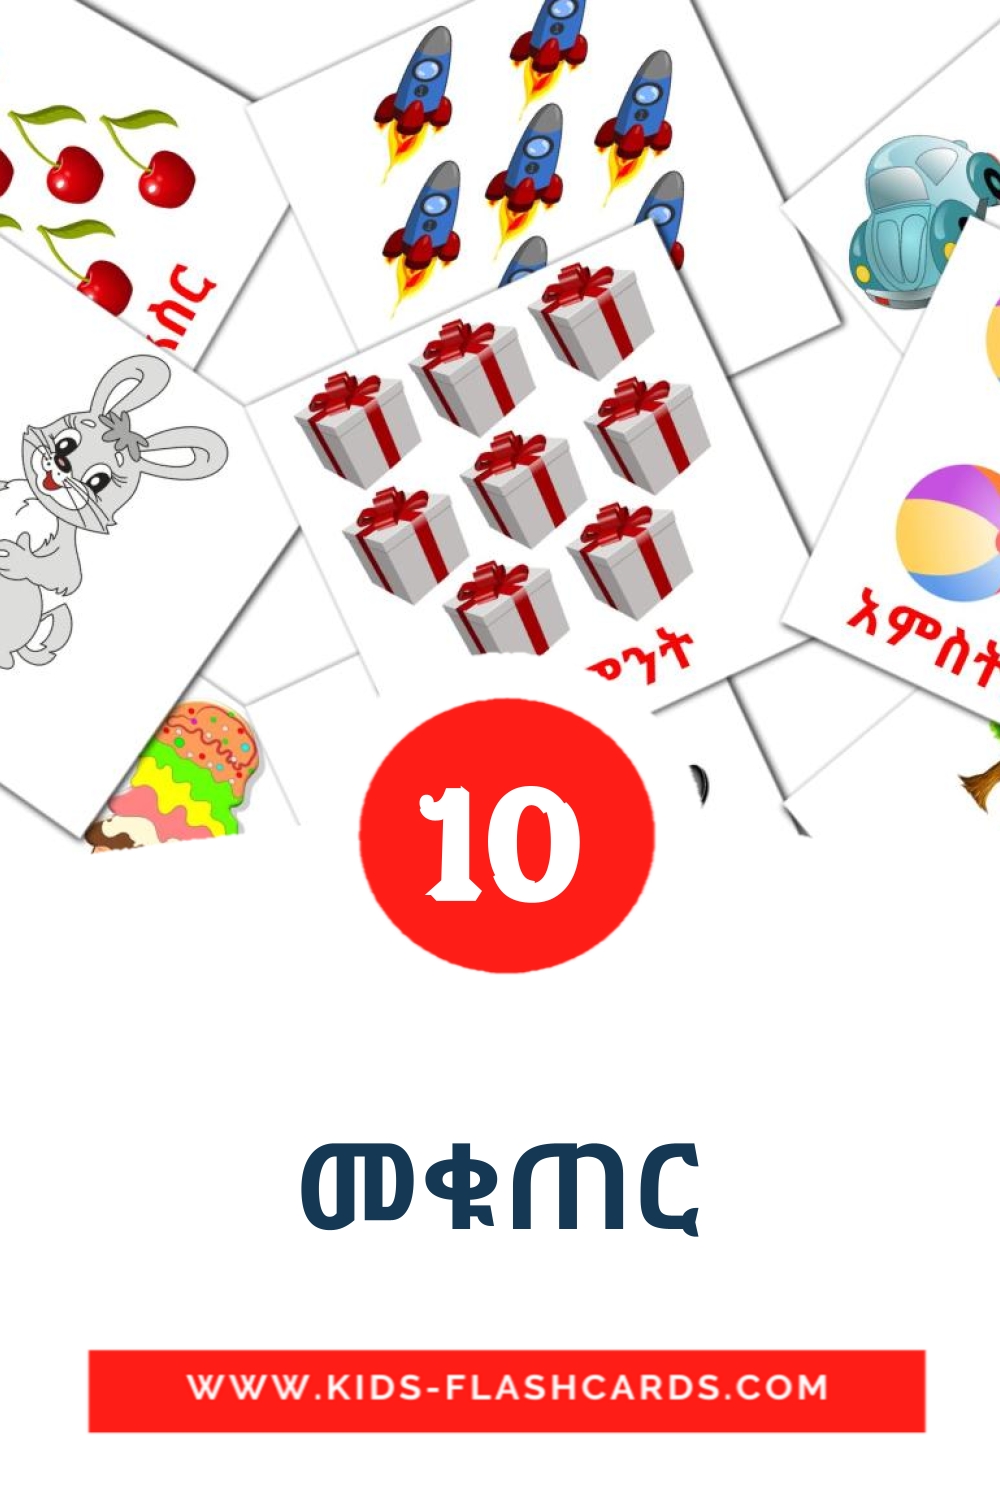 10 carte illustrate di መቁጠር per la scuola materna in amárica